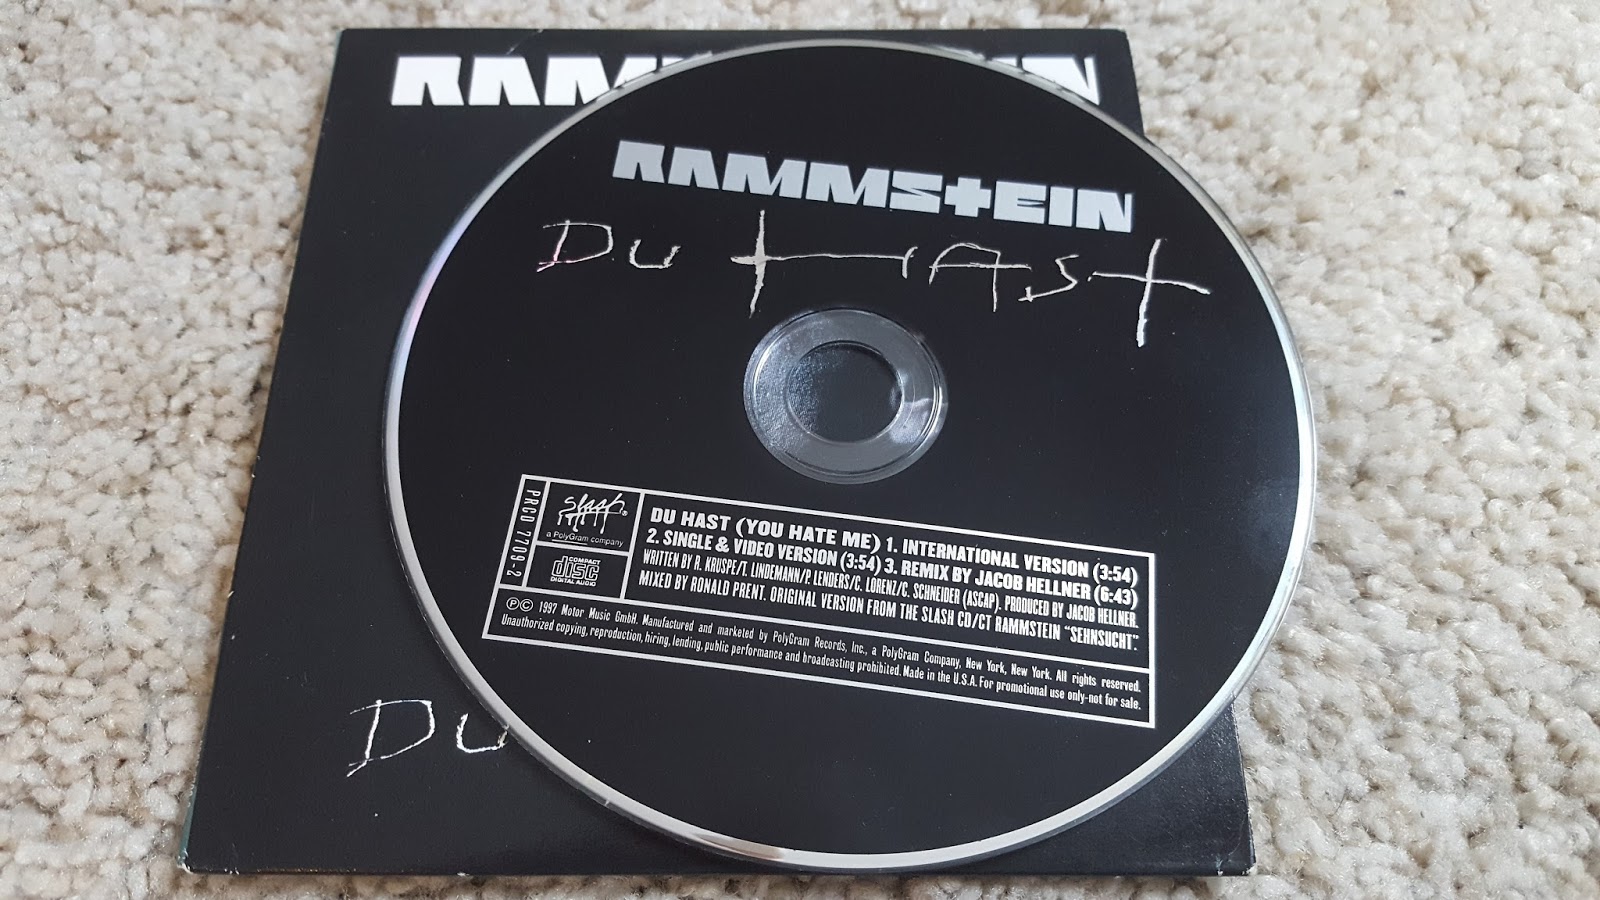 Песня рамштайн ду хаст на русском. Винил Rammstein коллекция. Рамштайн альбомы пластинки. Rammstein Virgin пластинка. Rammstein Deutschland обложка винил.